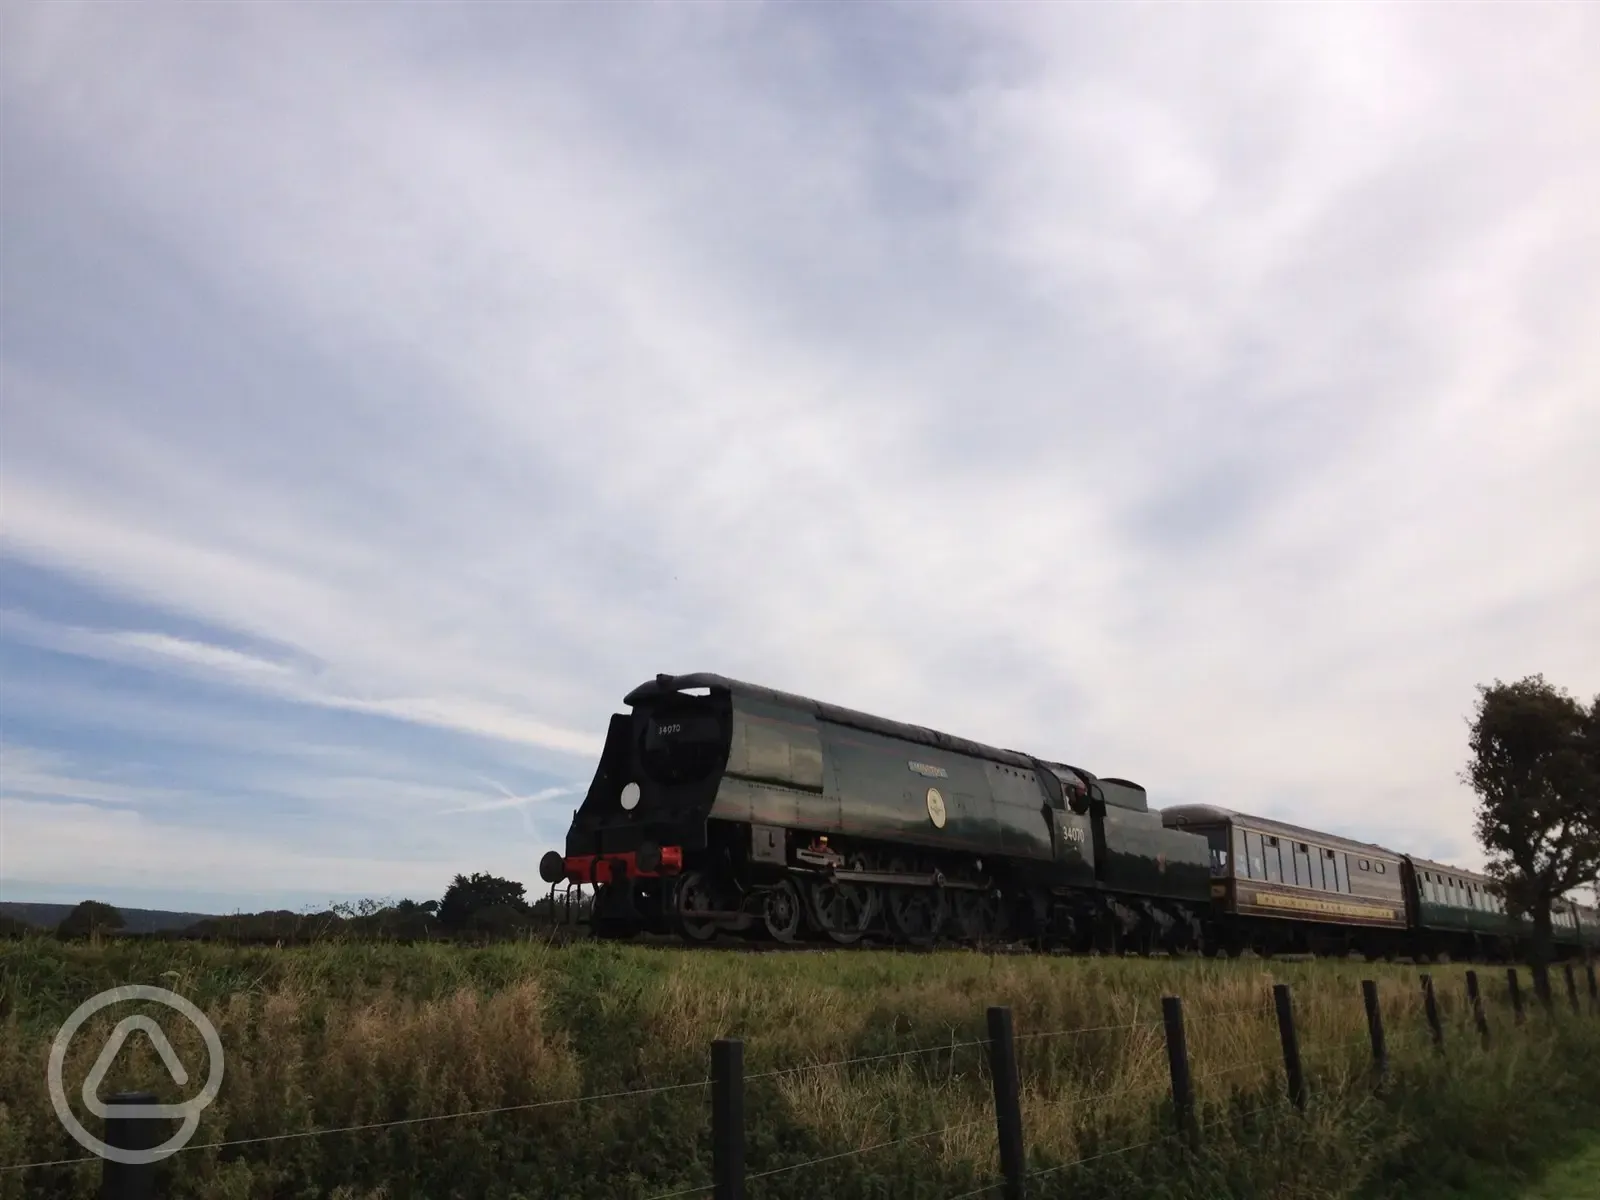 Passing steam railway